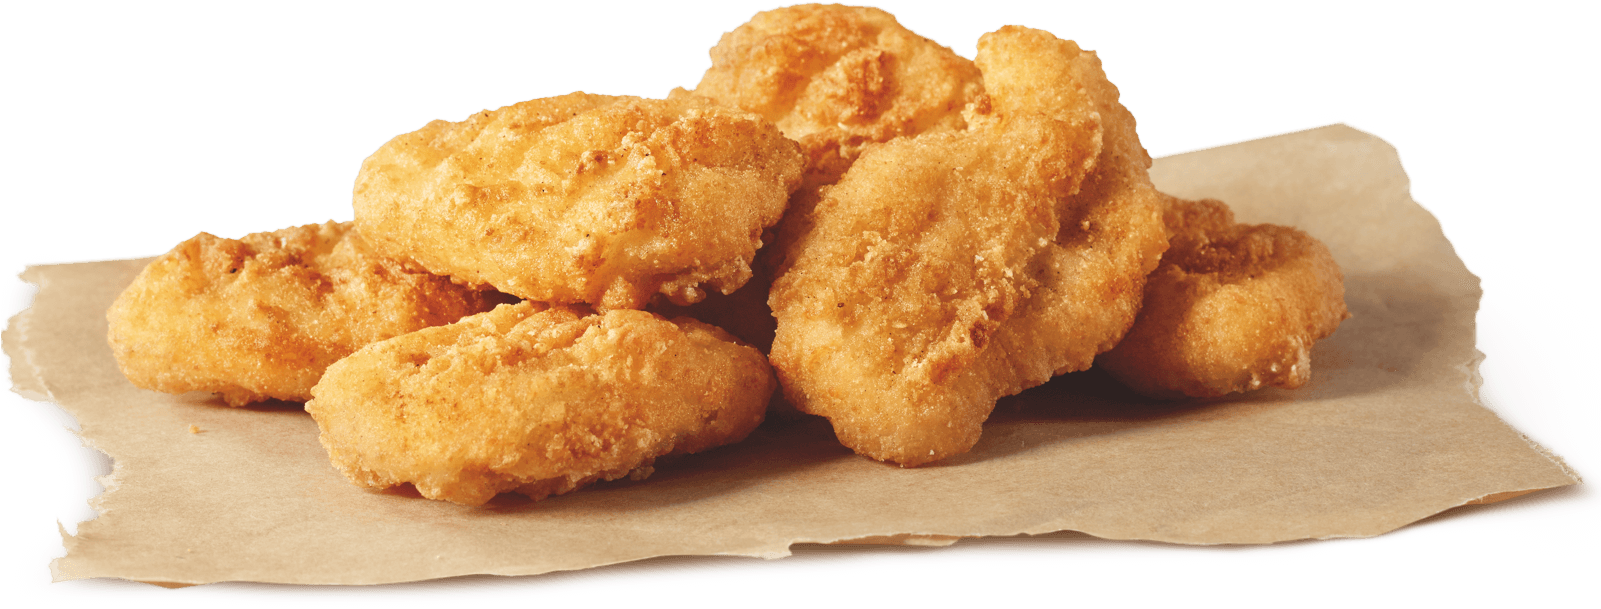 70-708673_chicken-nuggets-chicken-nugget